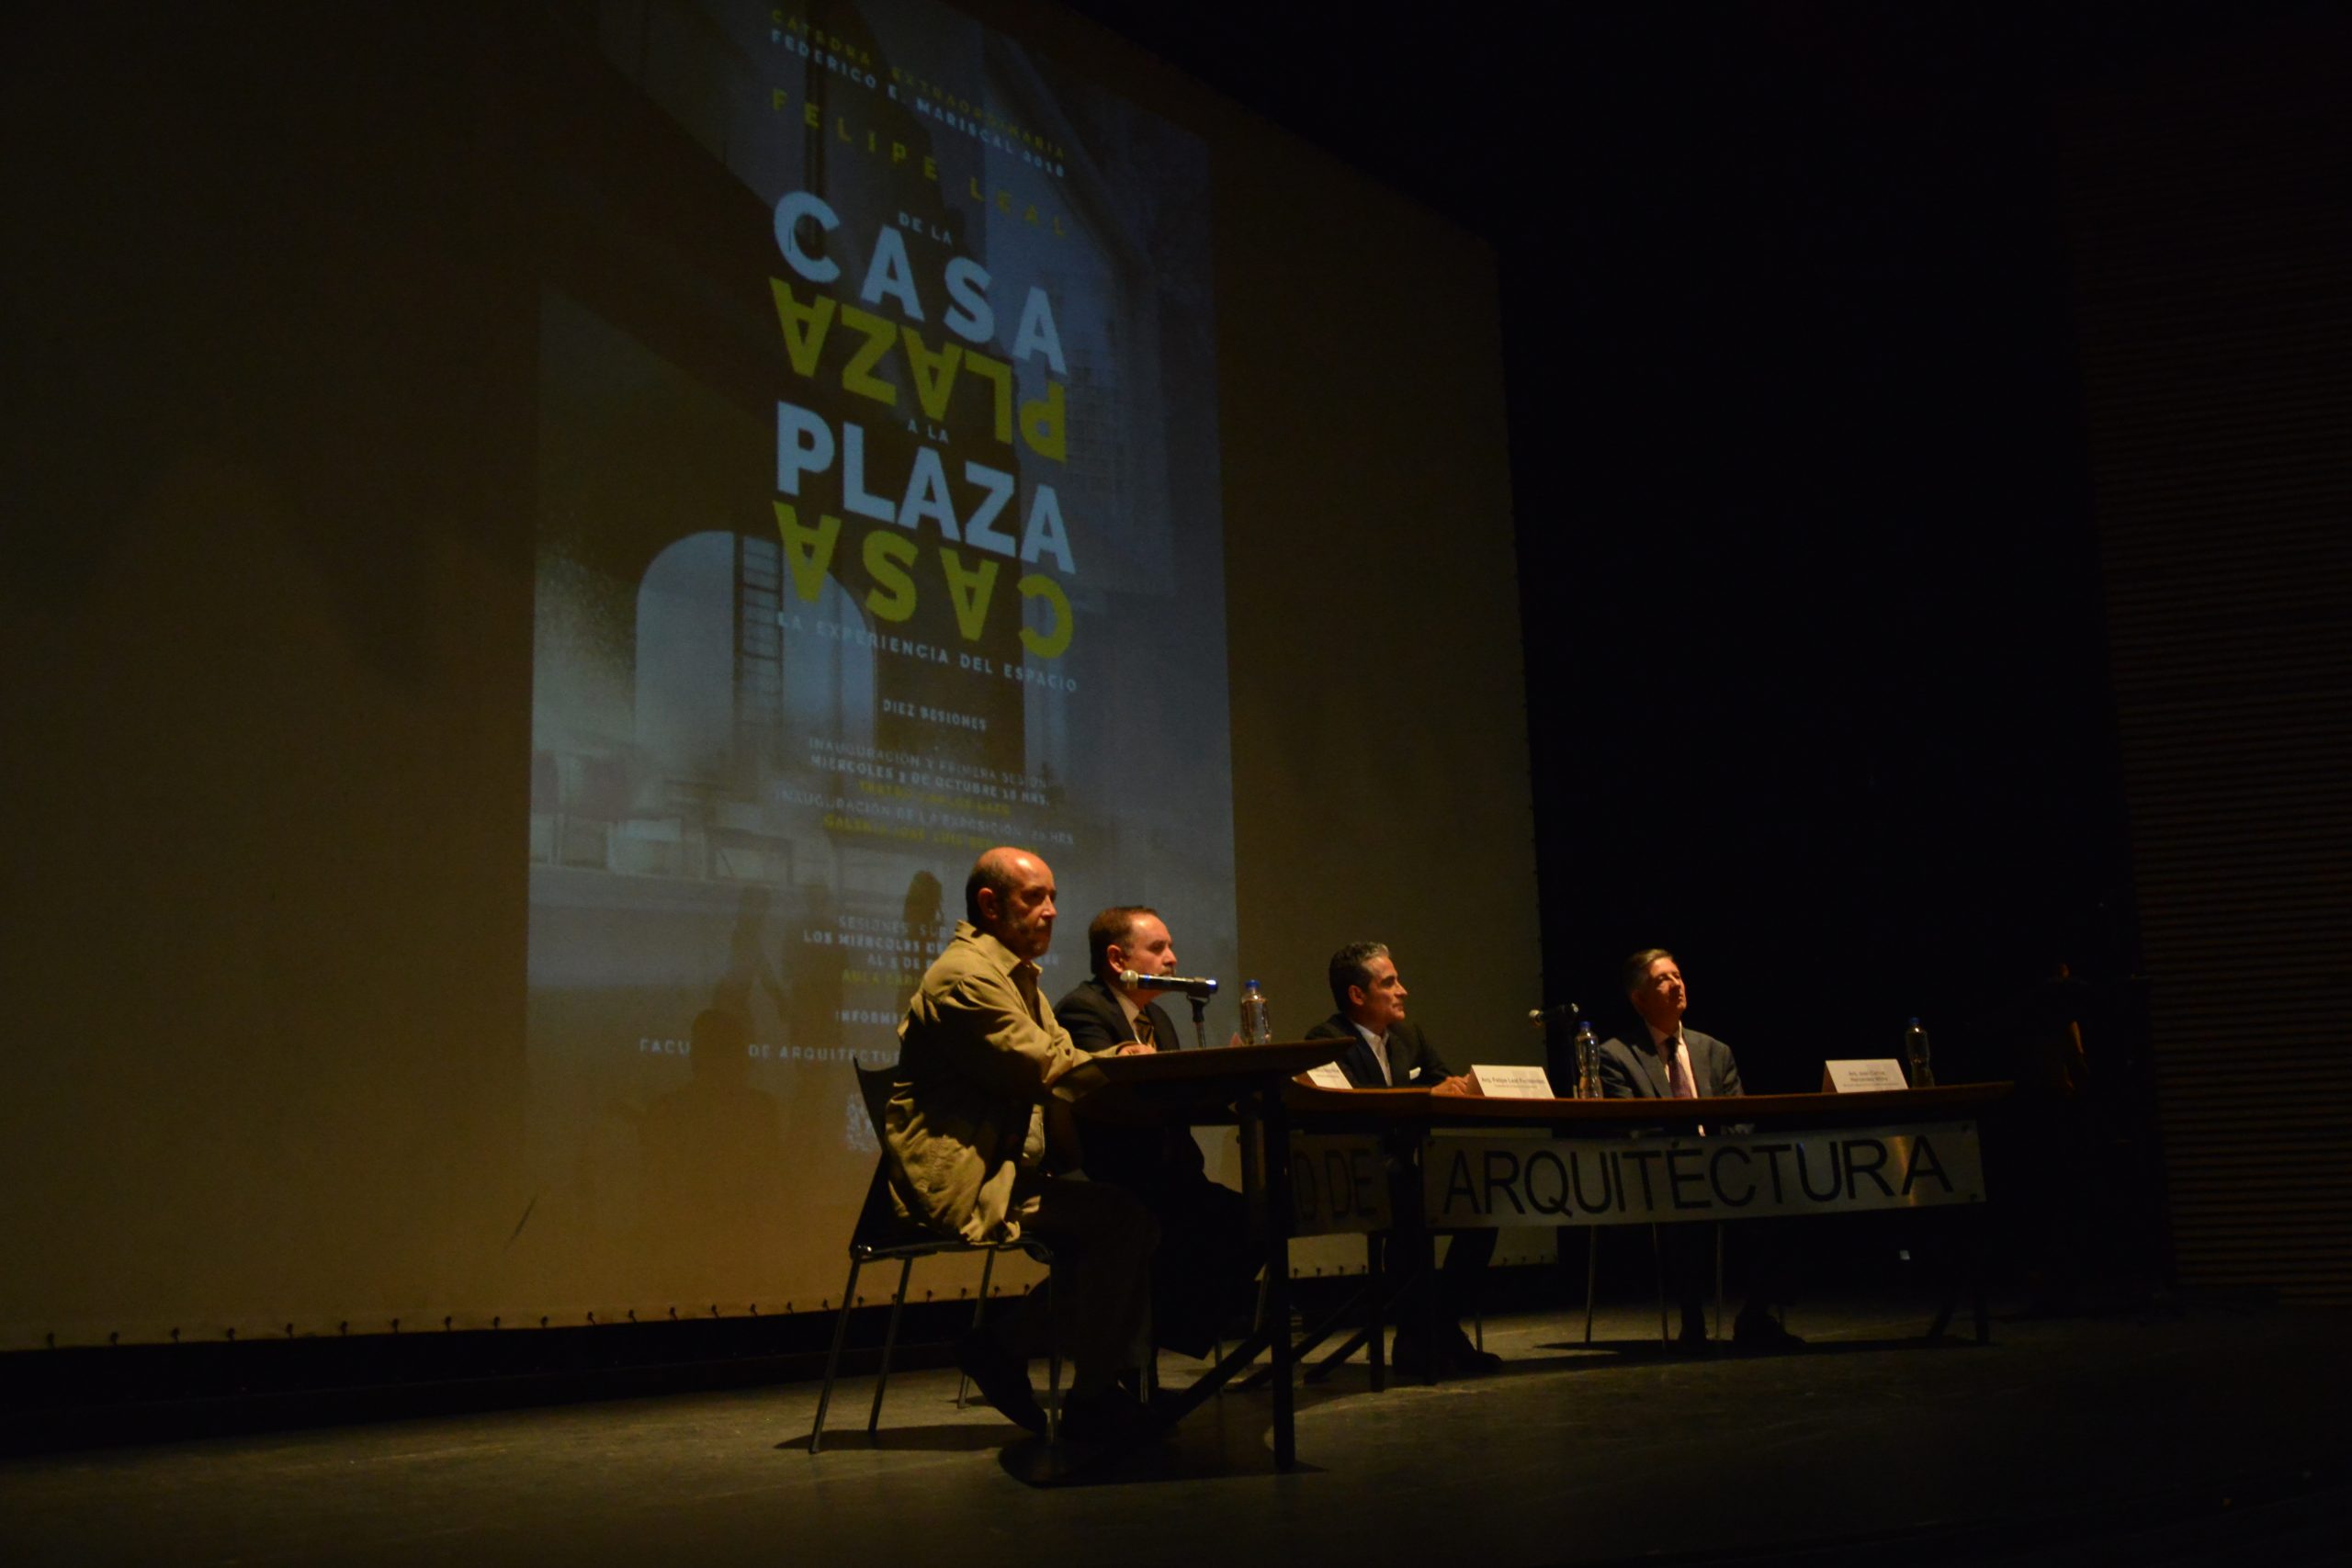 Ceremonia de inauguración. De izquierda a derecha: Luis de la Torre, Marcos Mazari, Felipe Leal y Juan Carlos Hernández White. Fotografía: Hugo Castillo.